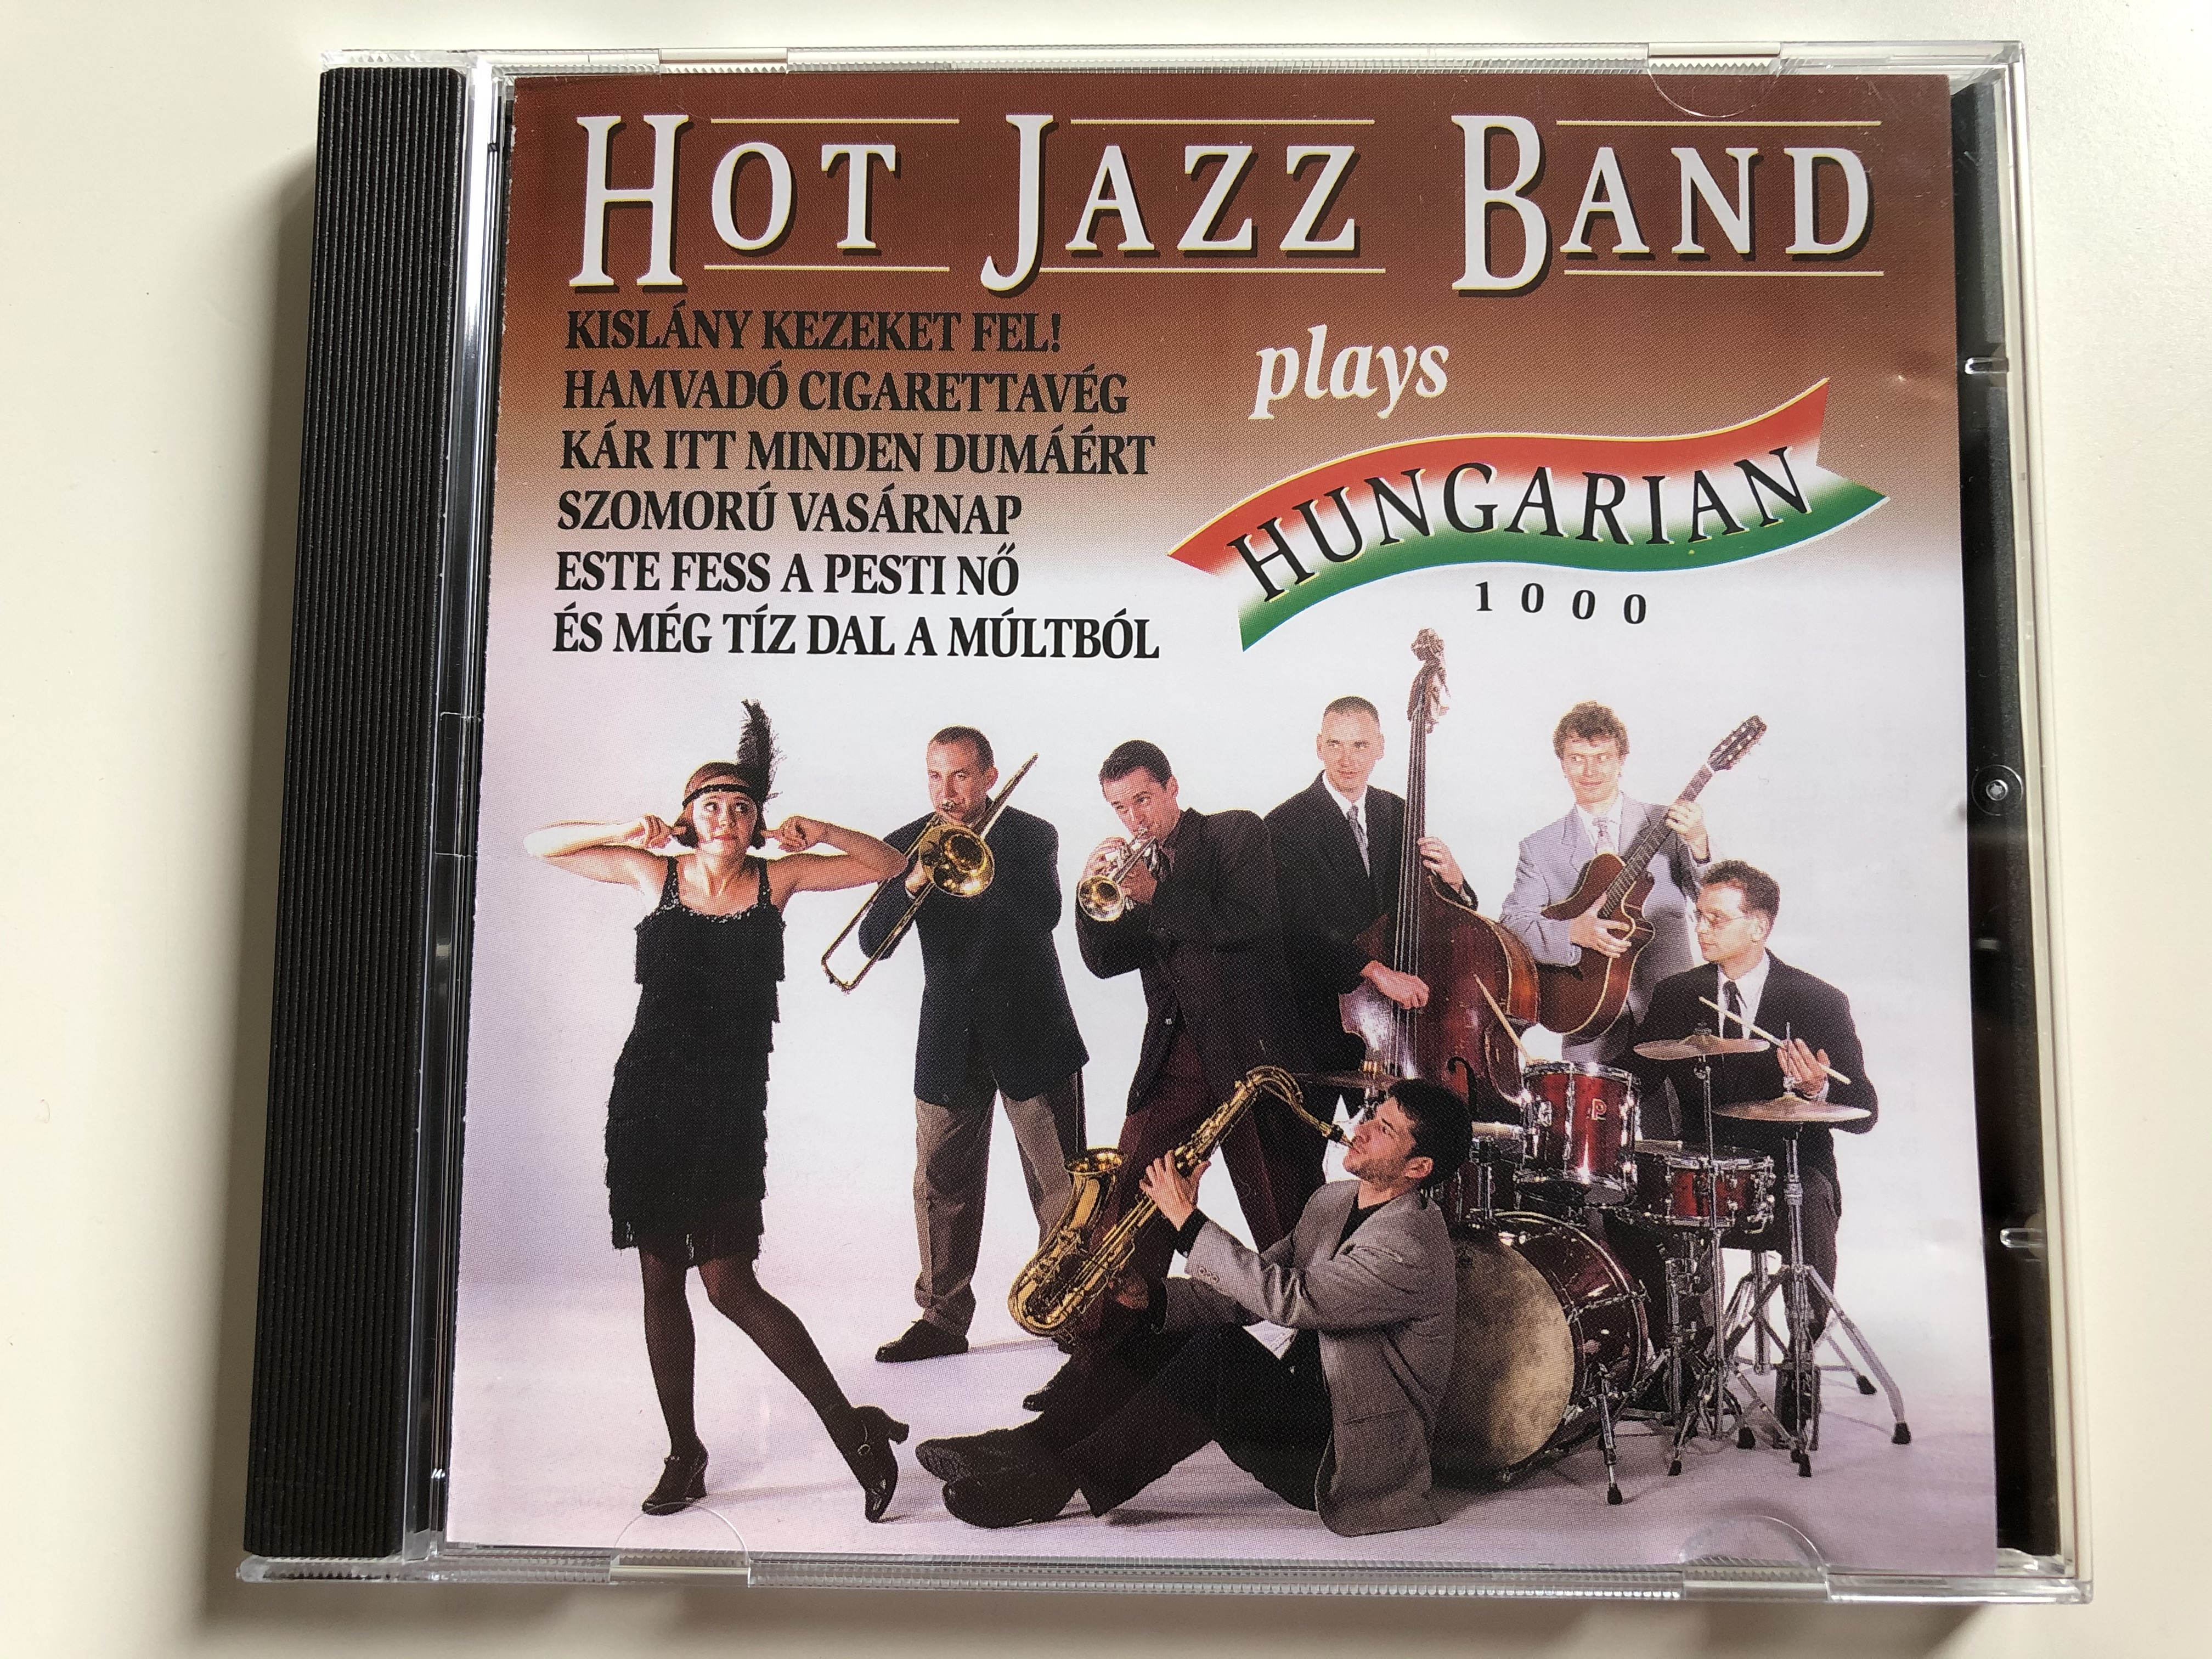 hot-jazz-band-plays-hungarian-1000-kisl-ny-kezeket-fel-hamvad-cigarettav-g-k-r-itt-minden-dum-rt-szomor-vas-rnap-este-fess-a-pesti-n-es-meg-tiz-dal-a-multbol-hot-jazz-band-audio-cd-19-1-.jpg